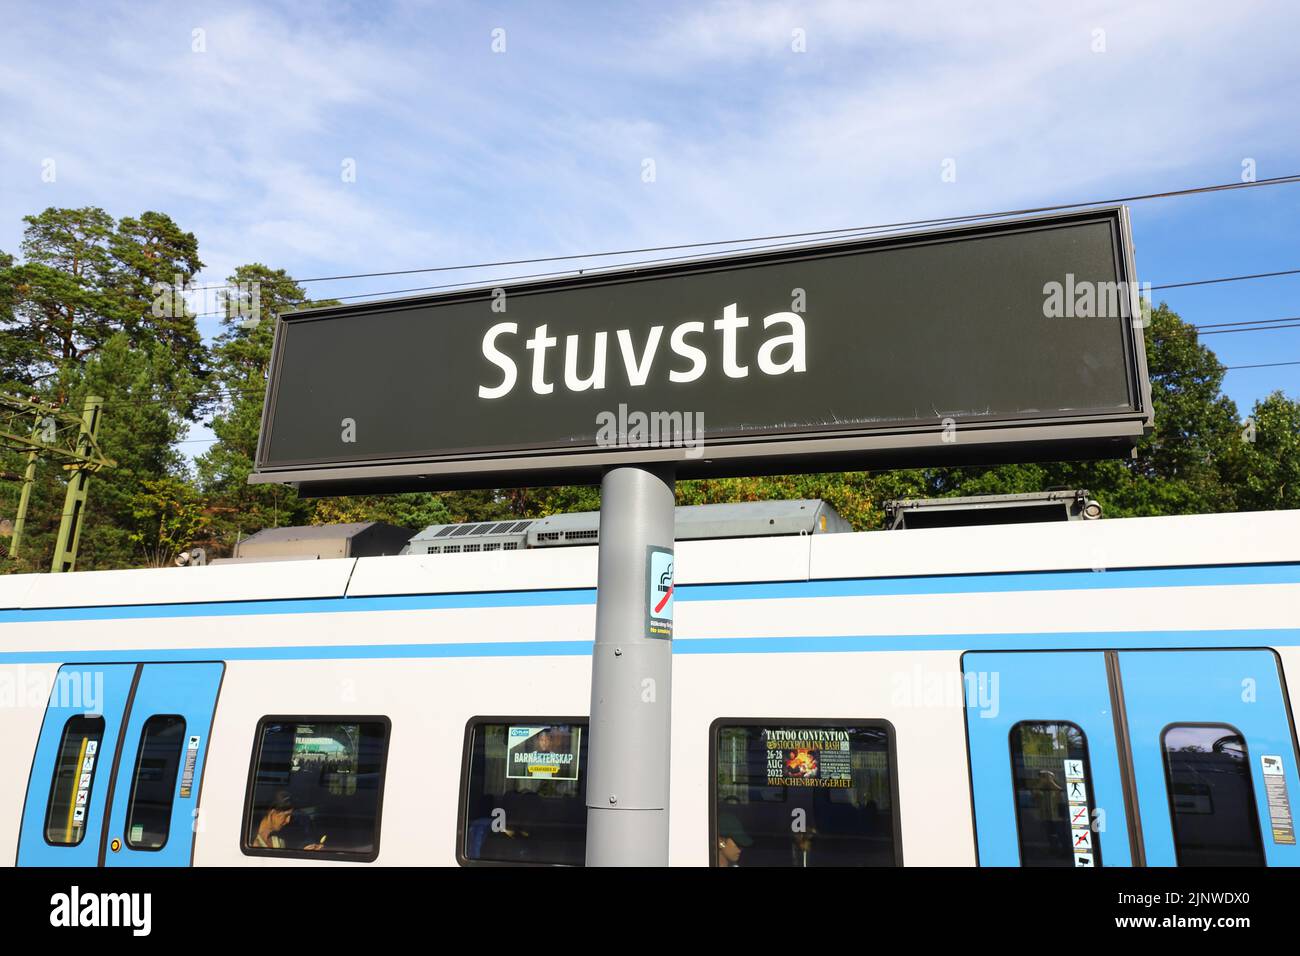 Stuvsta, Suecia - 11 de agosto de 2022: Vista de cerca de la estación de ferrocarril de Stuvsta, cartel con el nombre de la plataforma con un tren de transporte público de Estocolmo Foto de stock